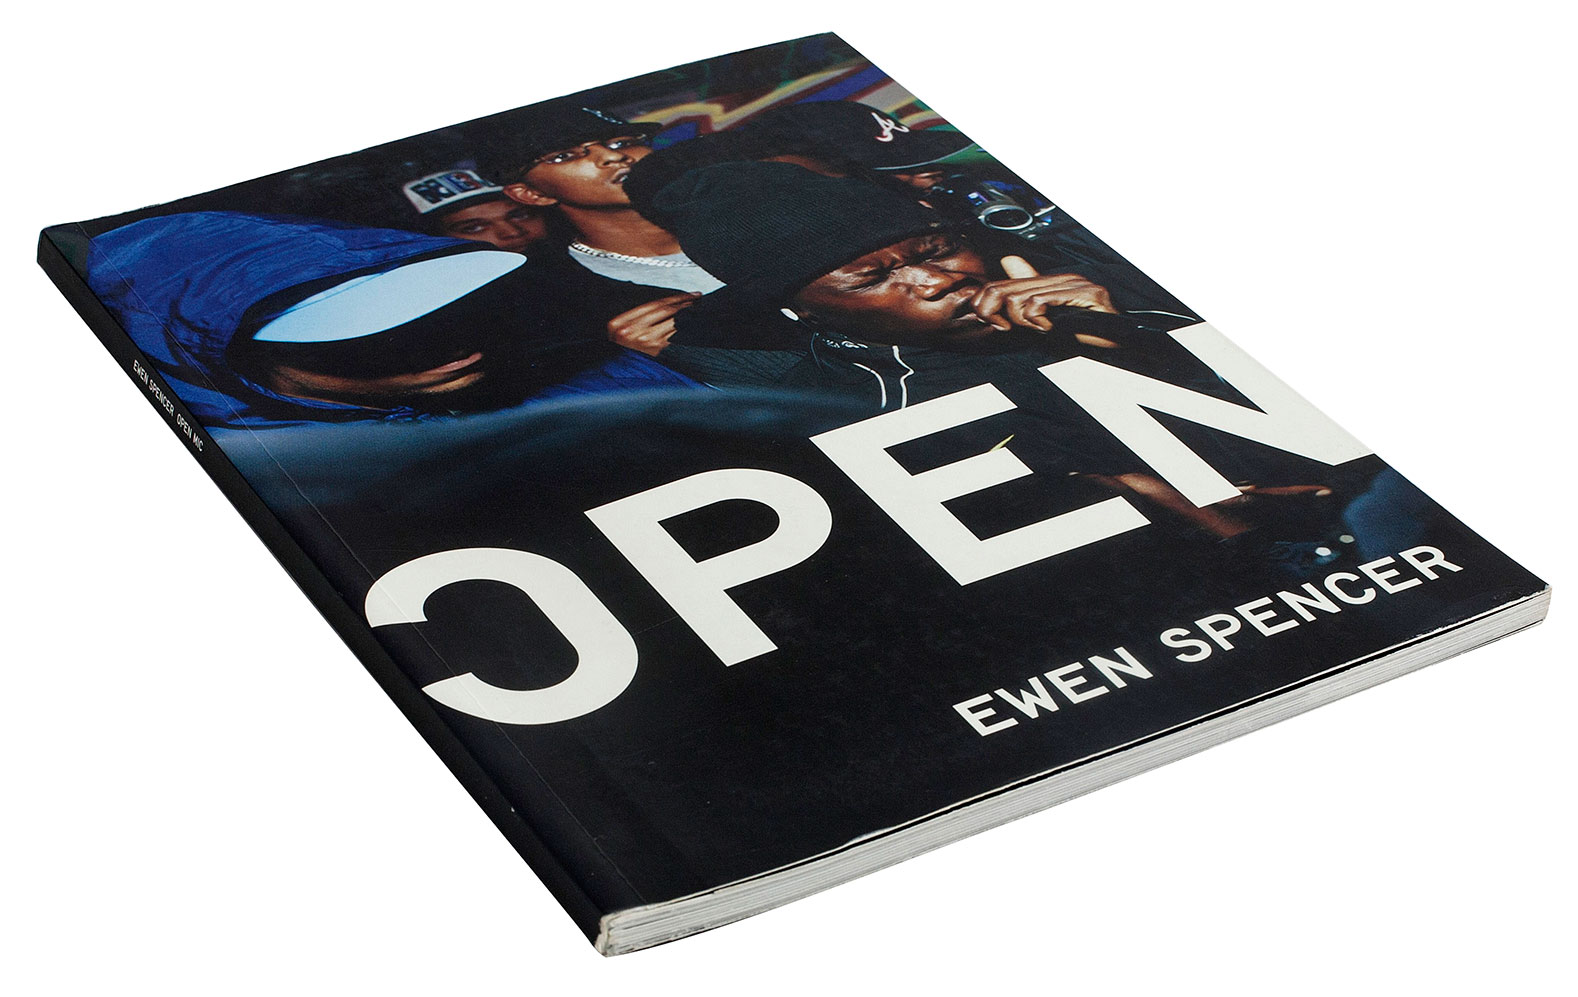 Ewen Spencer - Open Mic